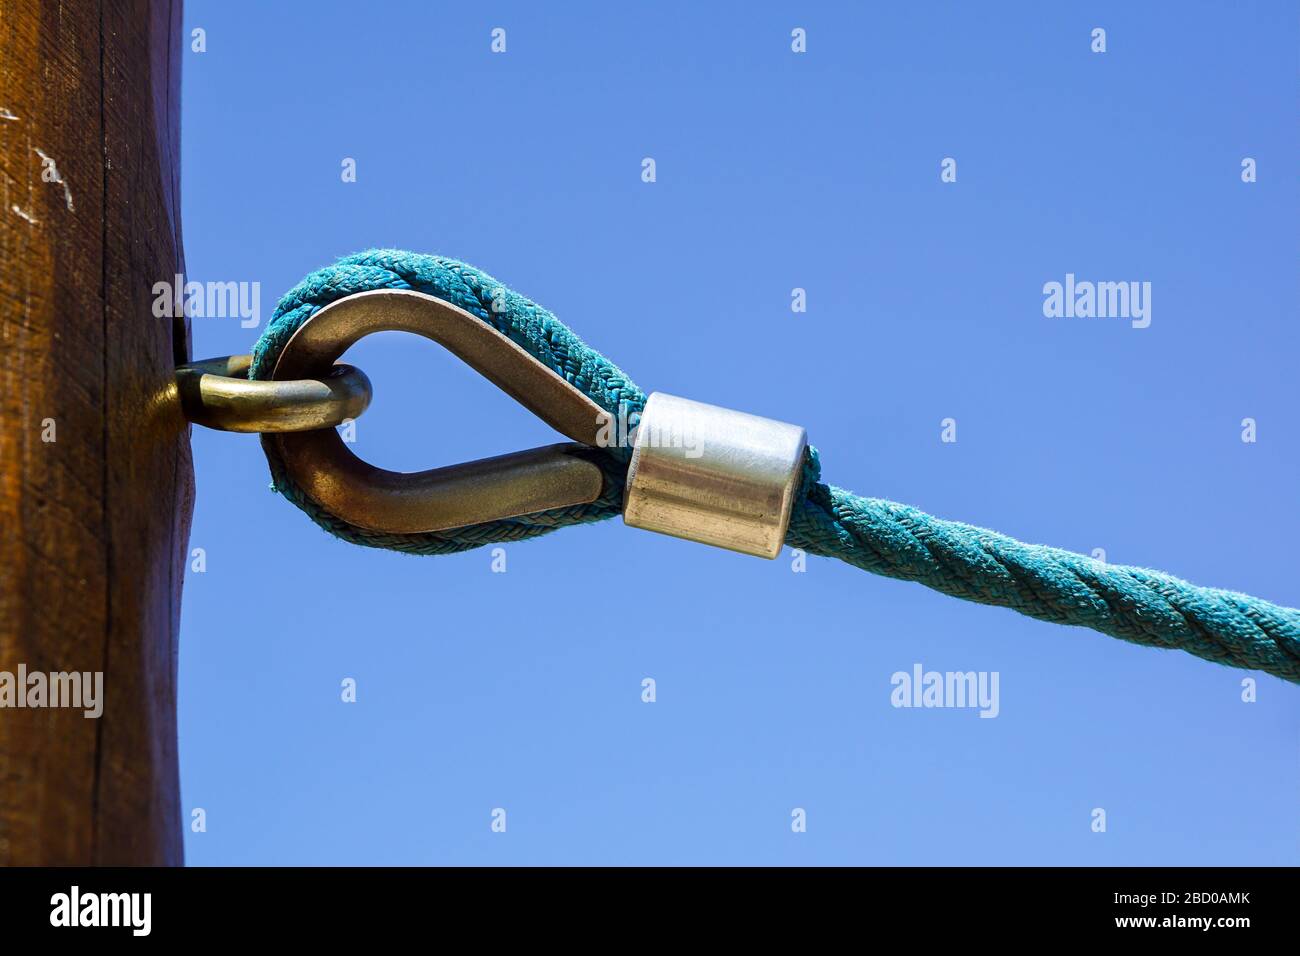 la manille rouillée relie l'élingue et le nœud attaché à la corde Banque D'Images